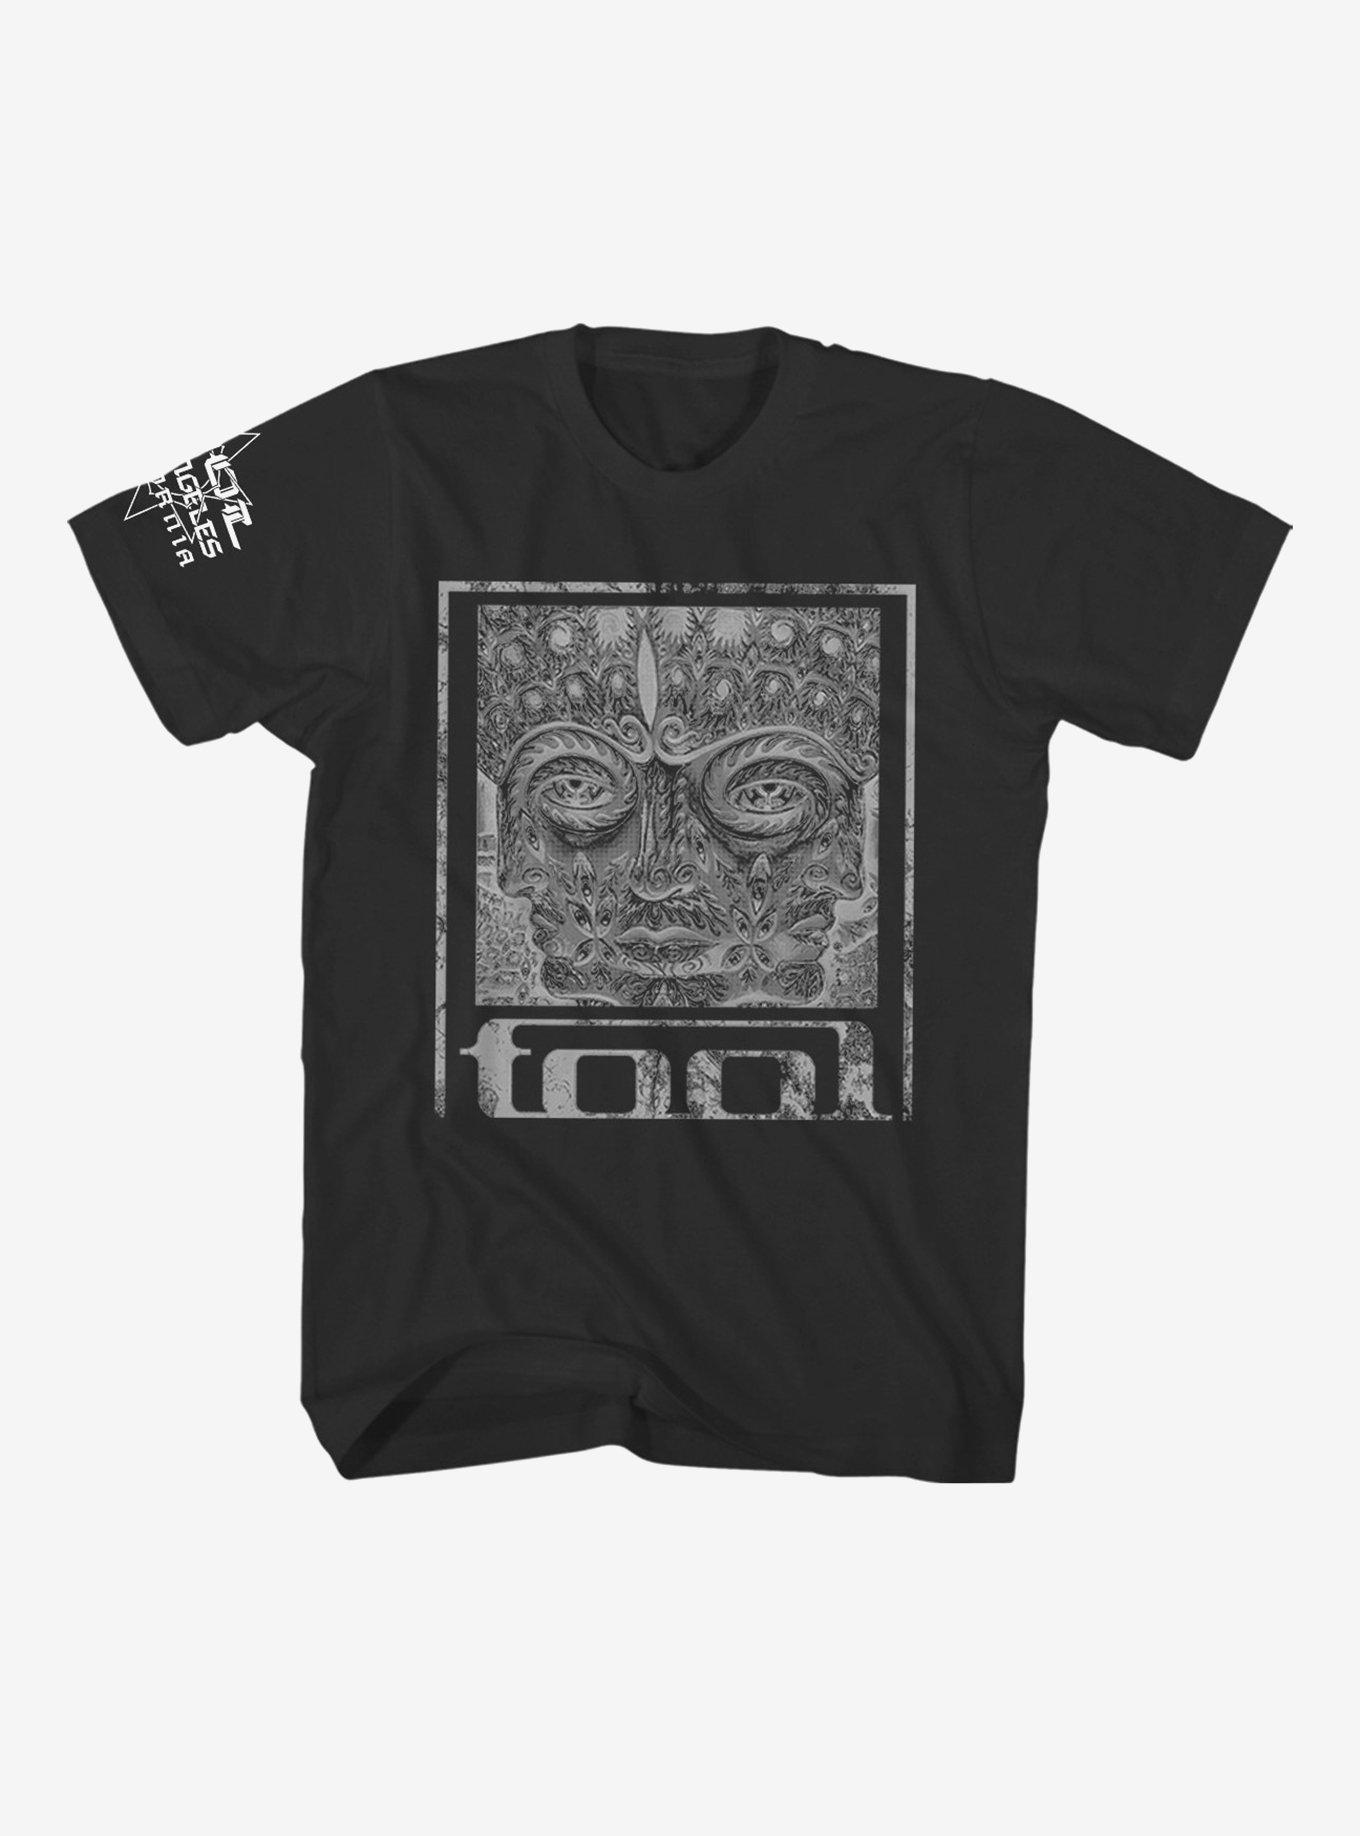 Tool 10,000 Days Face T-Shirt